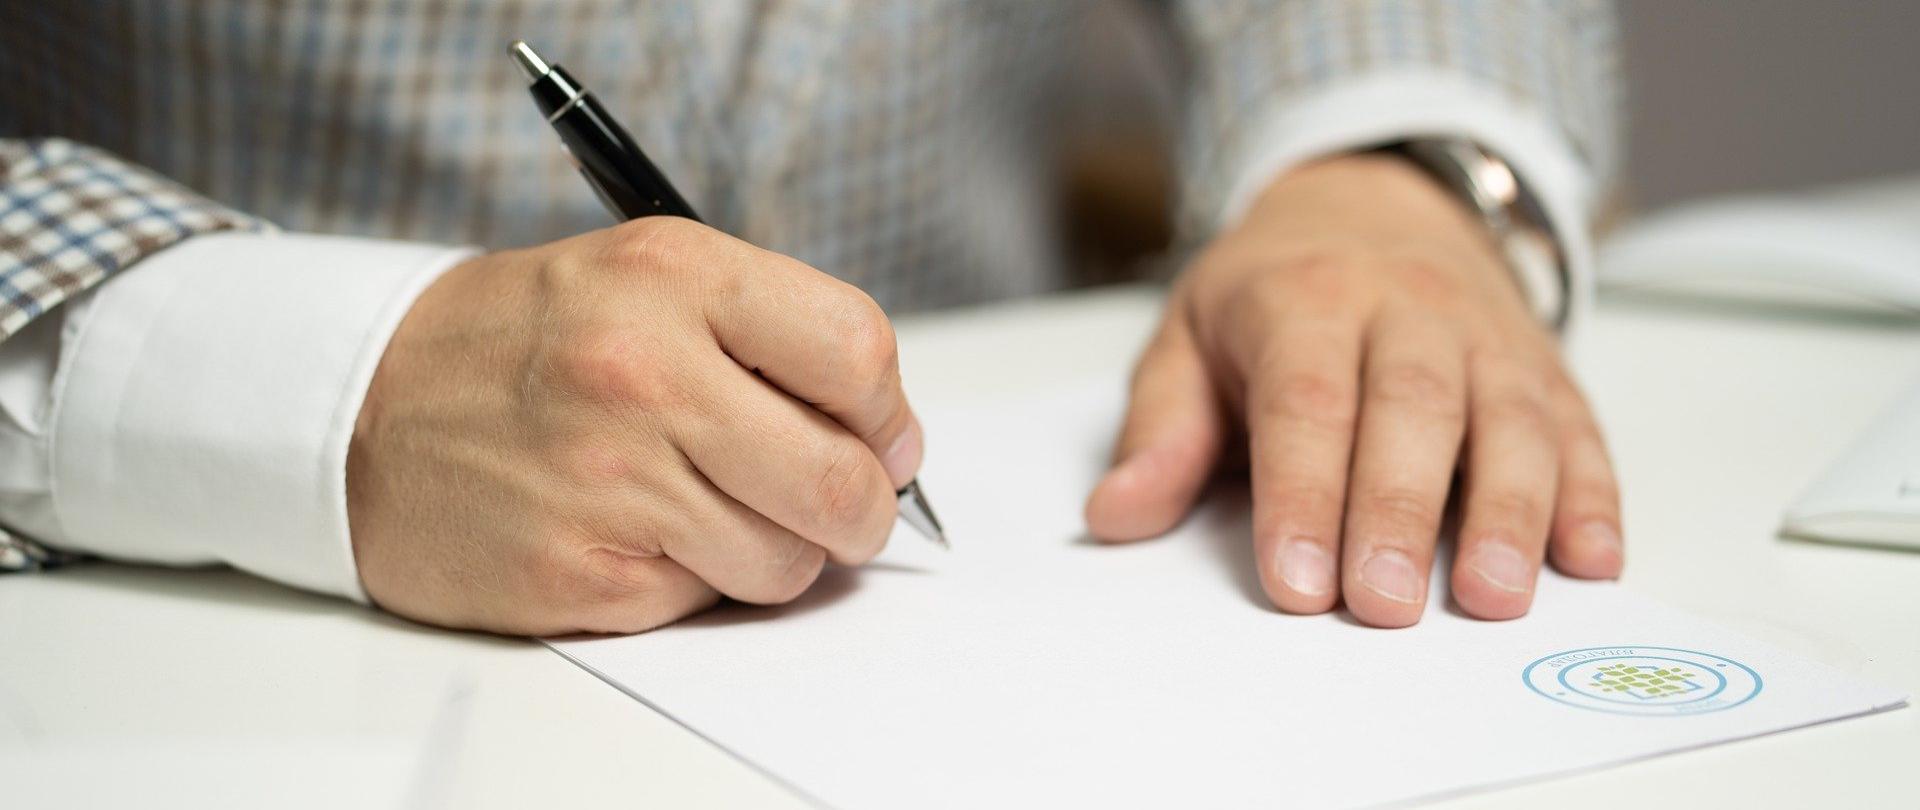 Zdjęcie przedstawia jedną osobę siedzącą przy biurku z długopisem w ręce i piszącą na kartce wewnątrz budynku. Osoba jest przedstawiona w taki sposób, że widoczny jest jedynie jej tułów i dłonie.